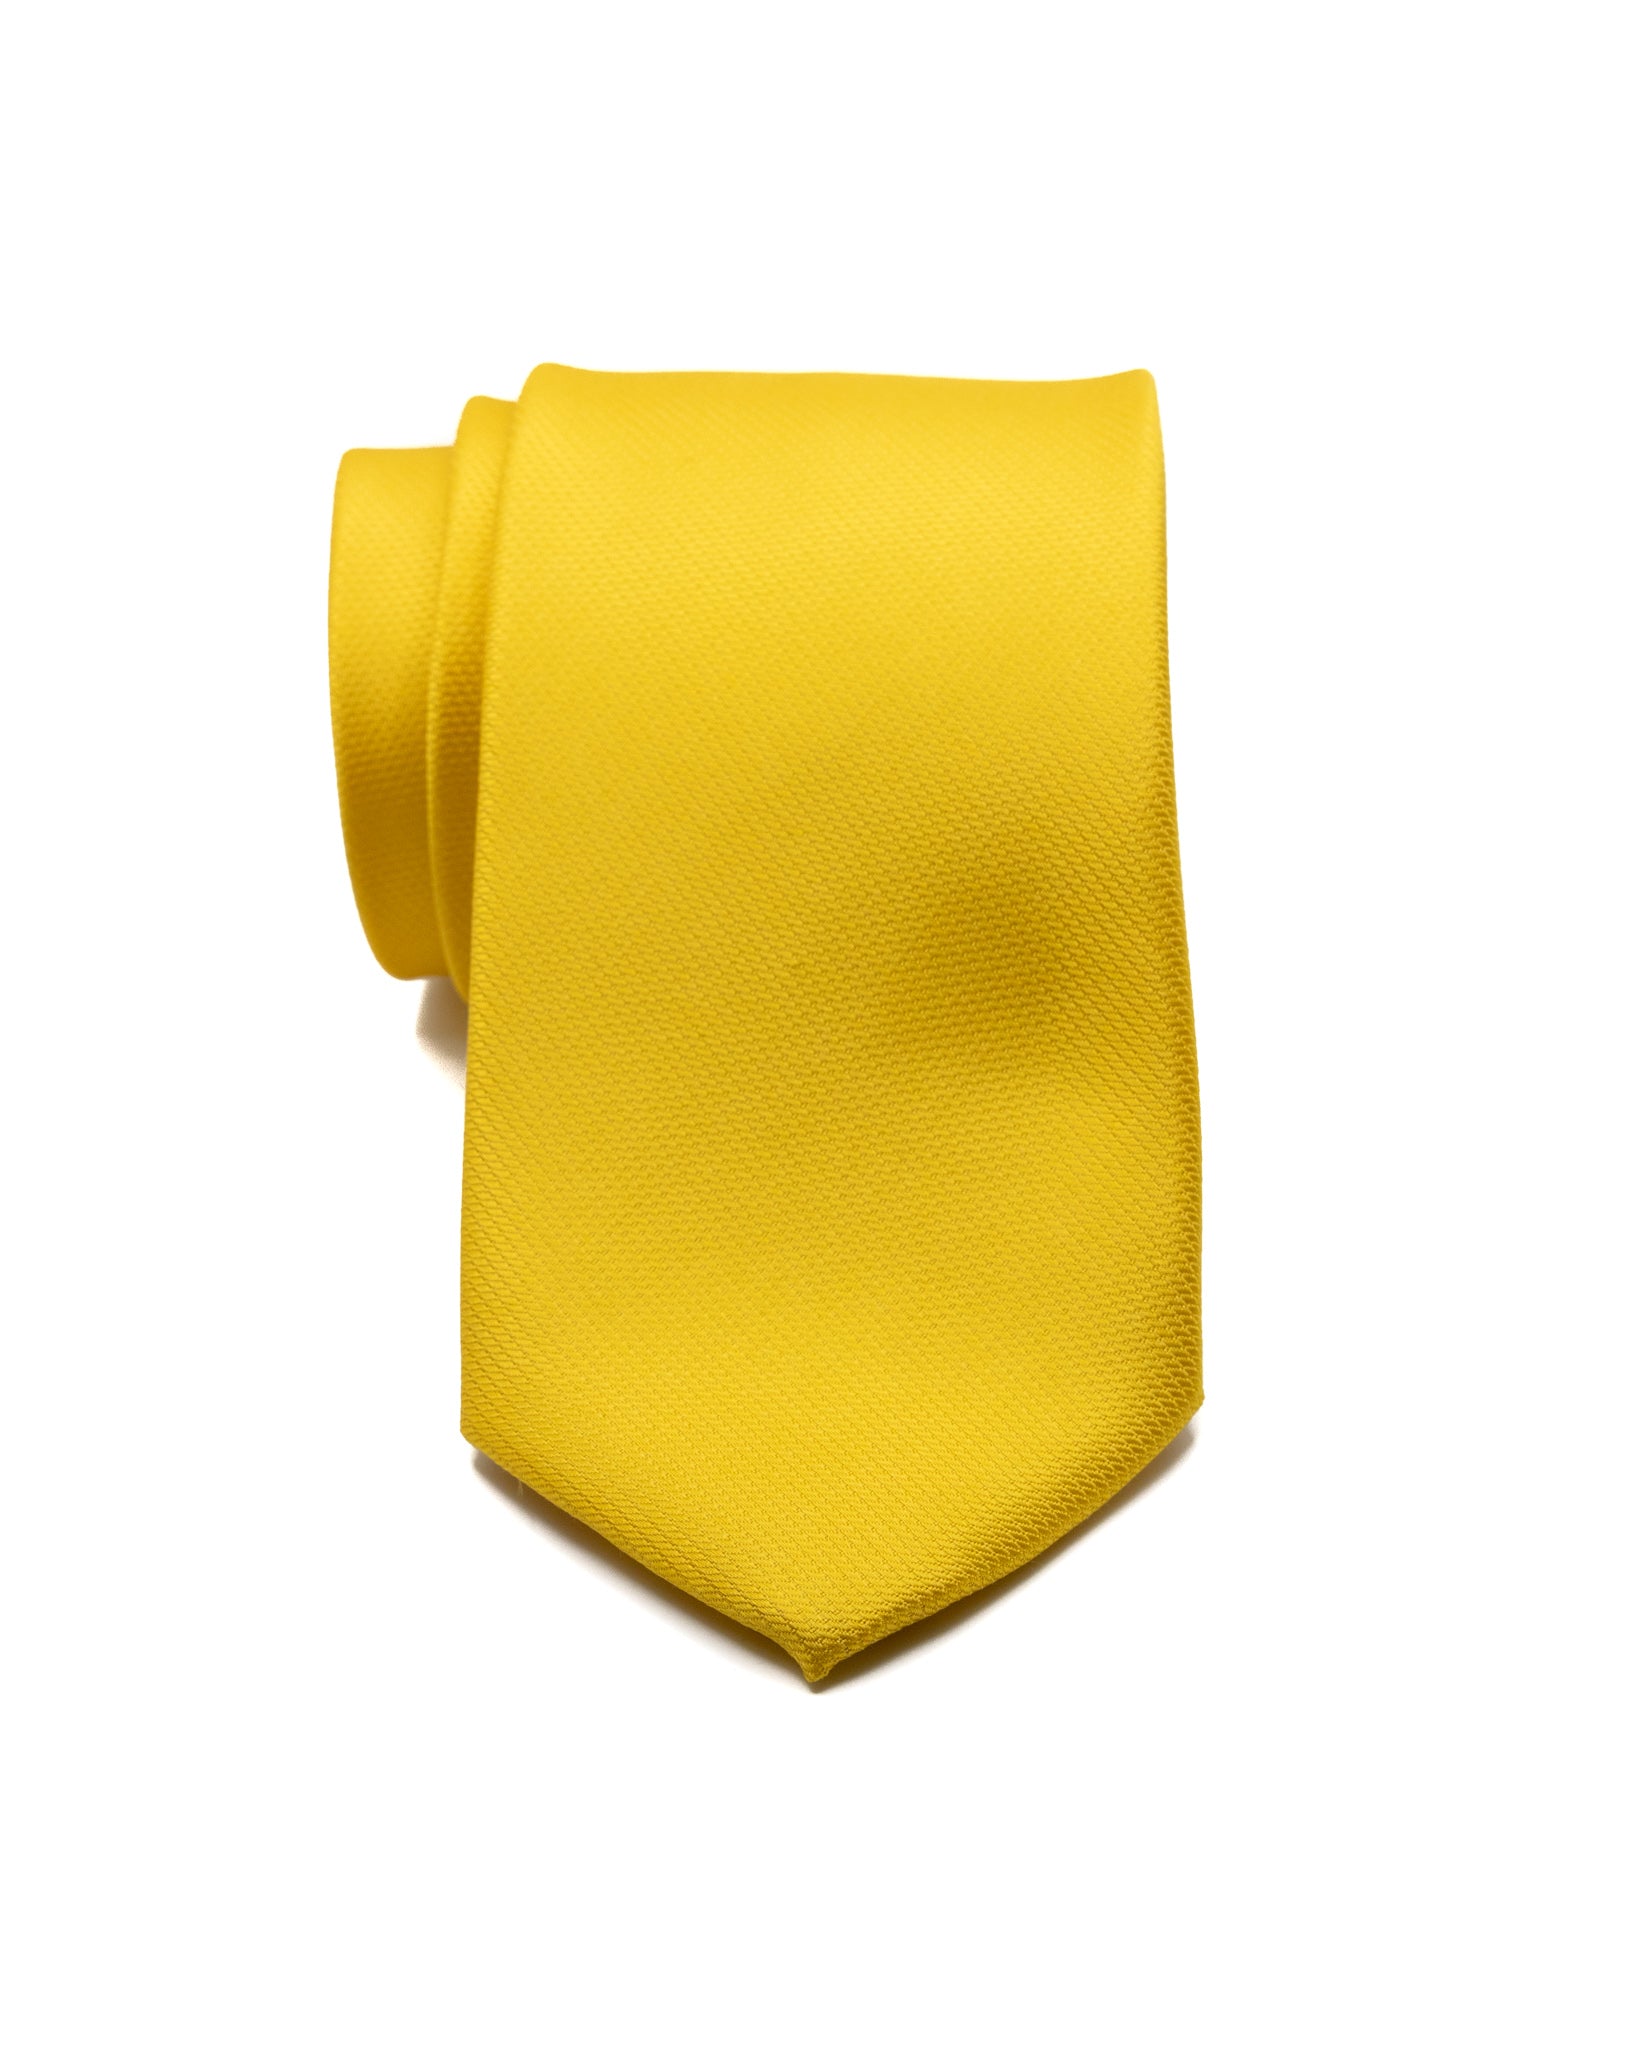 Cravate - en soie tissée moutarde